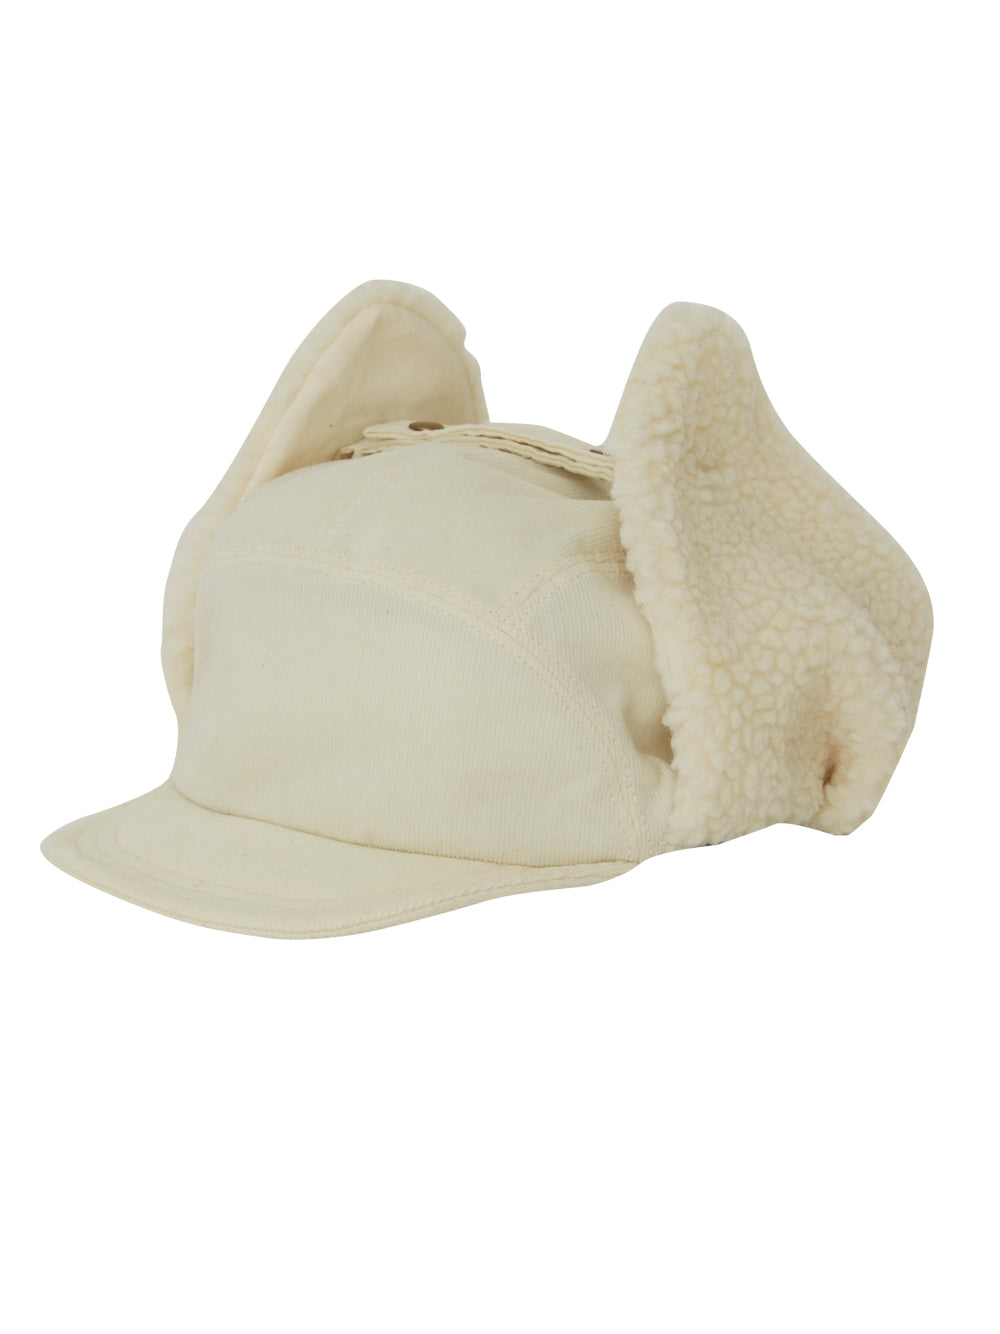 Lamb's Ear Ivory Cap